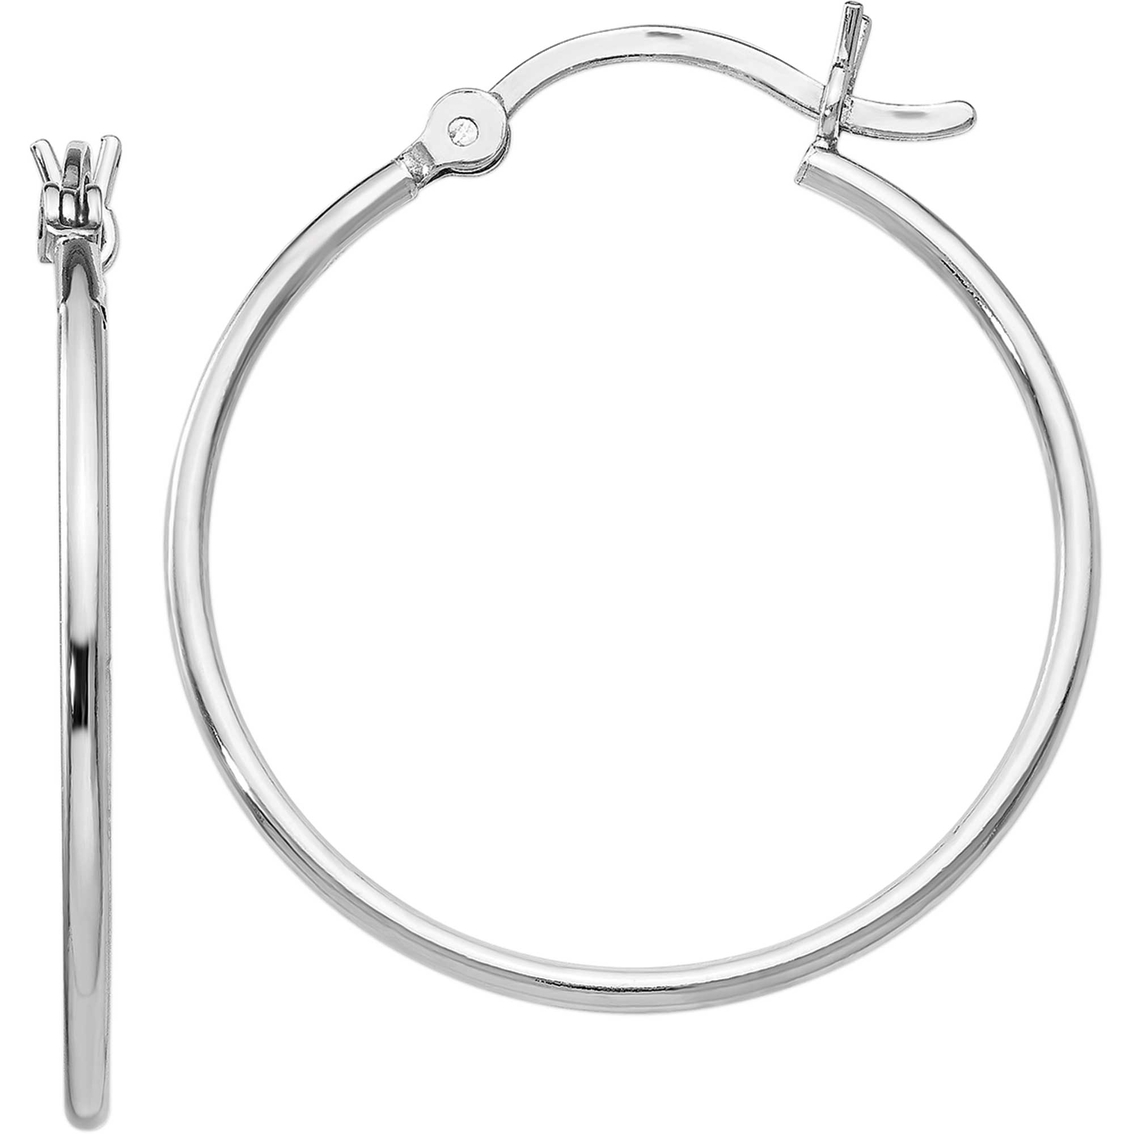 Sterling Silver Polished Hinged Hoop Earrings - Image 2 of 2